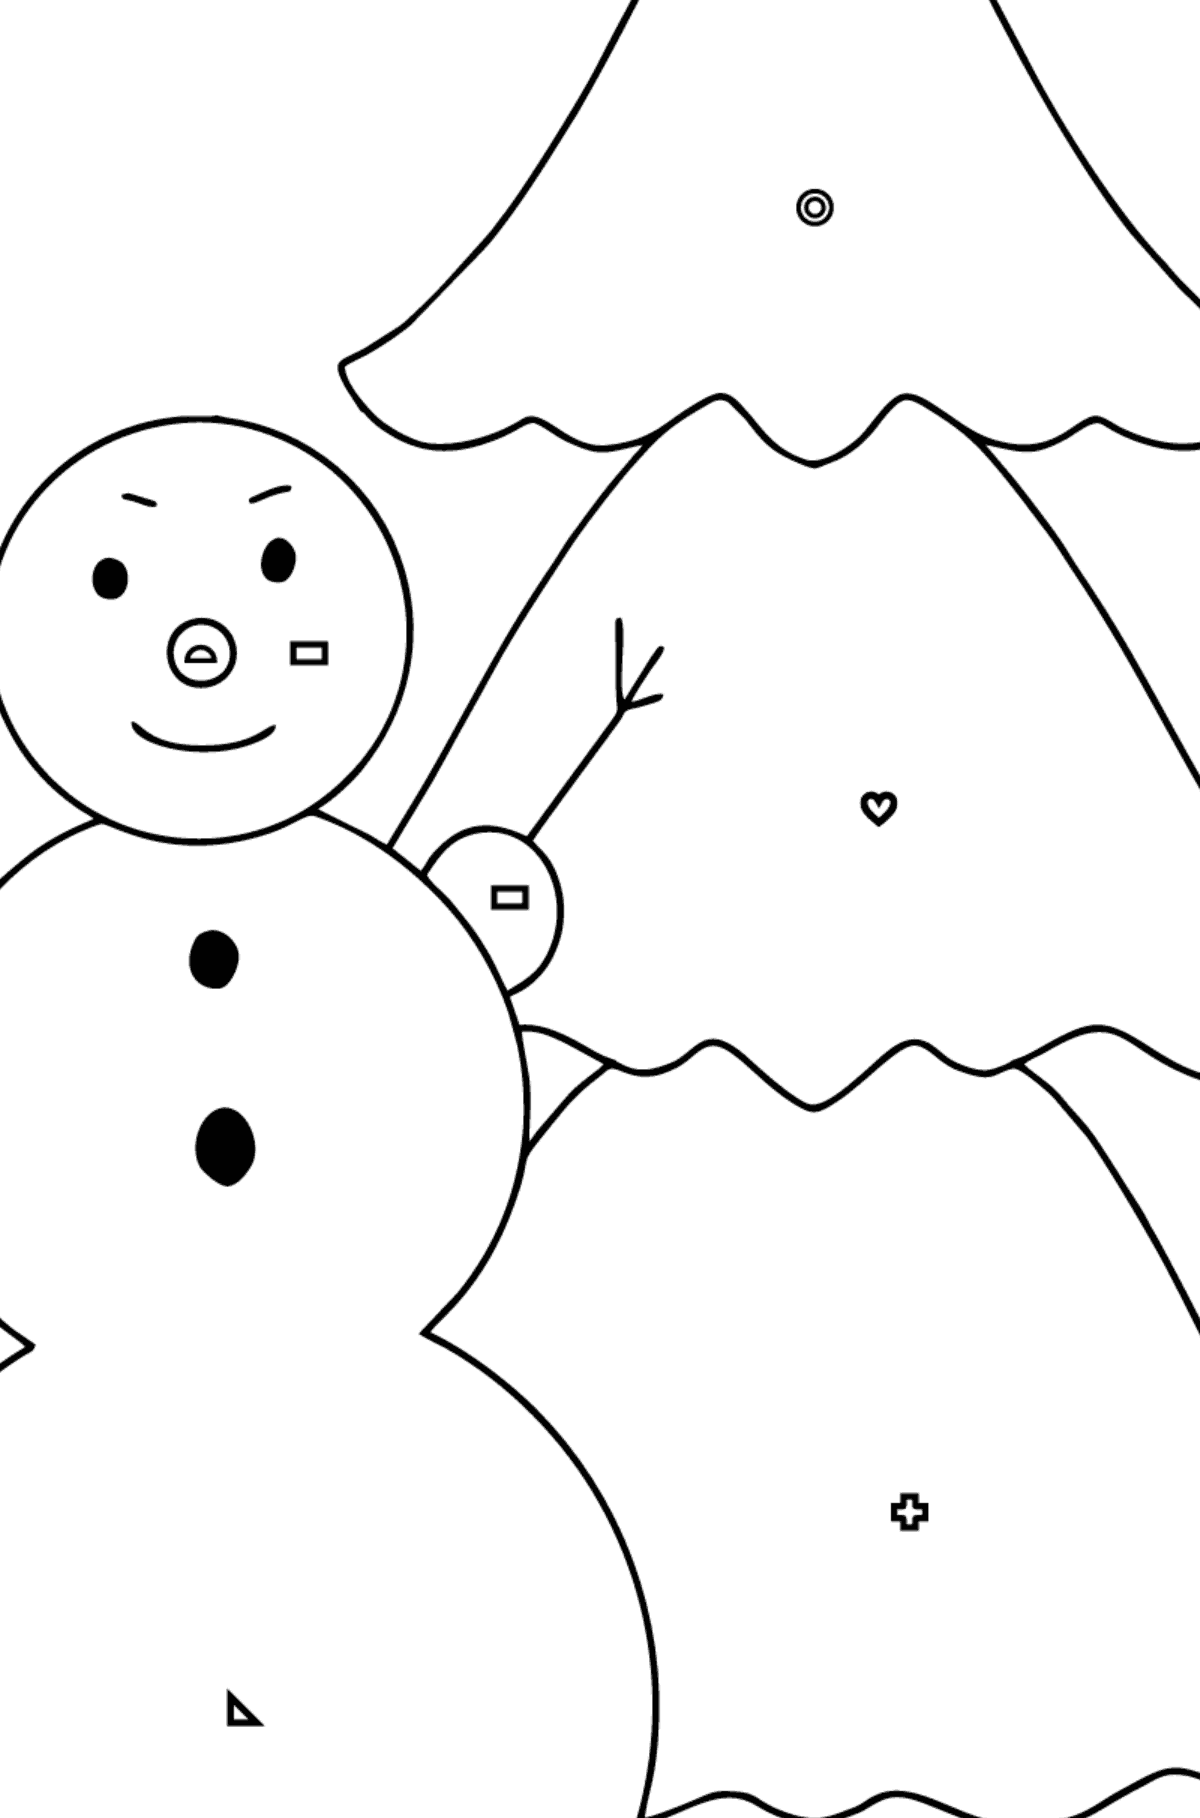 Omalovánka sněhulák a strom - Omalovánka podle Geometrických tvarů pro děti